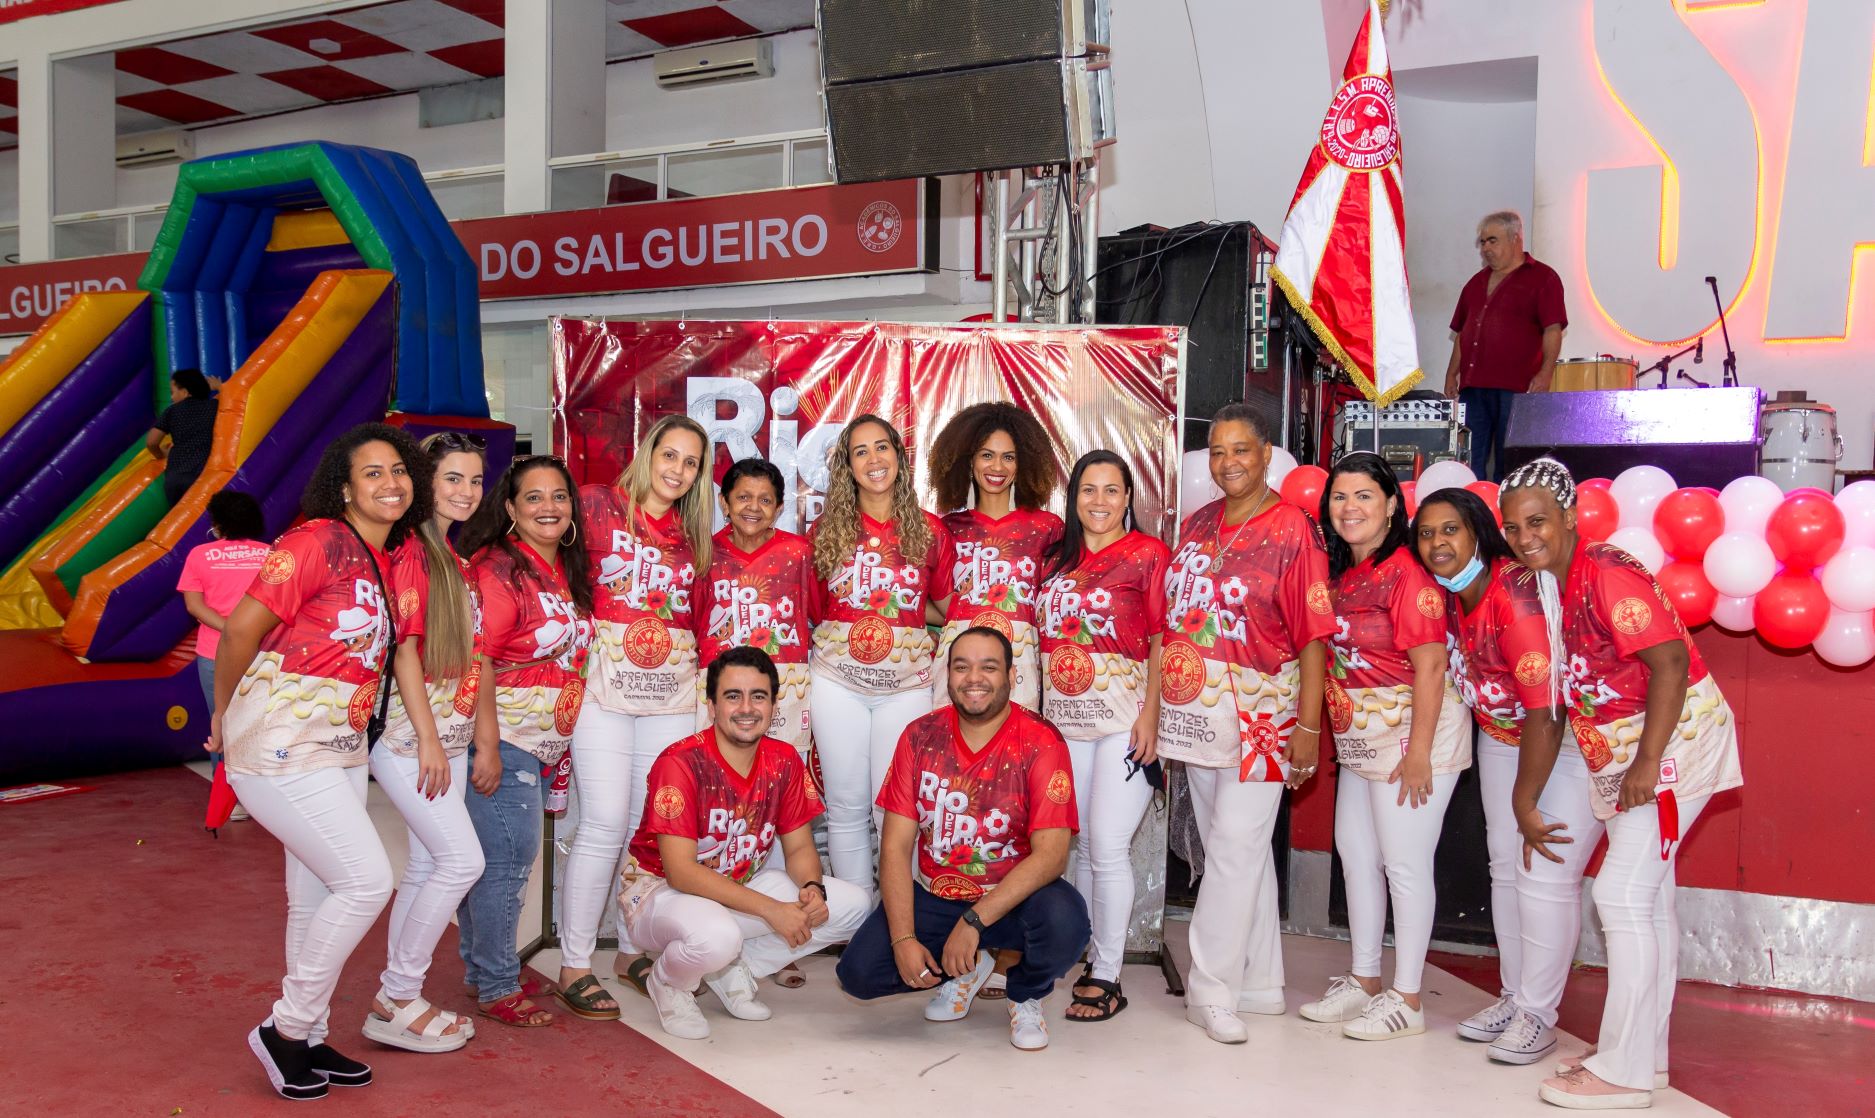 Aprendizes do Salgueiro aposta em reedição para o Carnaval 2022